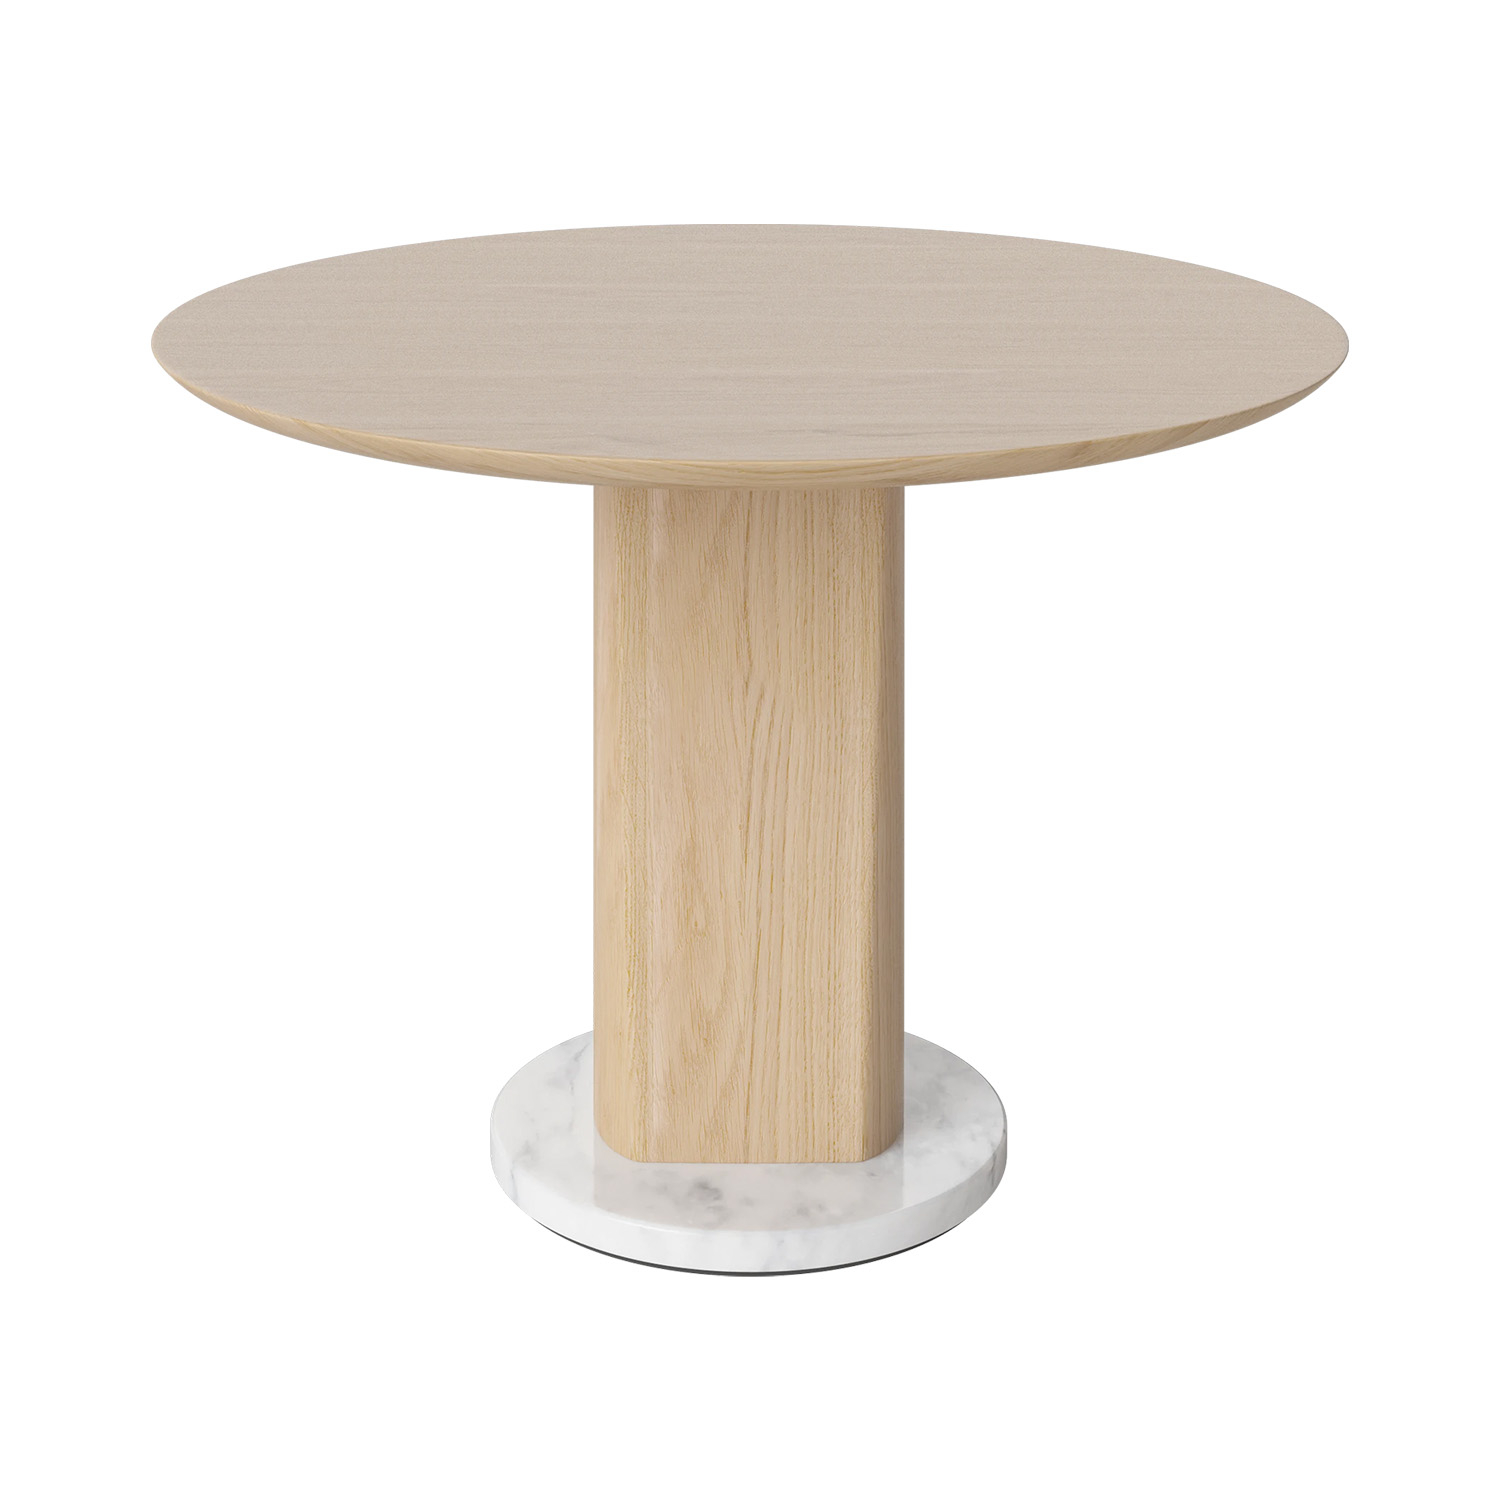 Bolia designové odkládací stolky Root Side Table (průměr 60 cm, výška 44 cm)